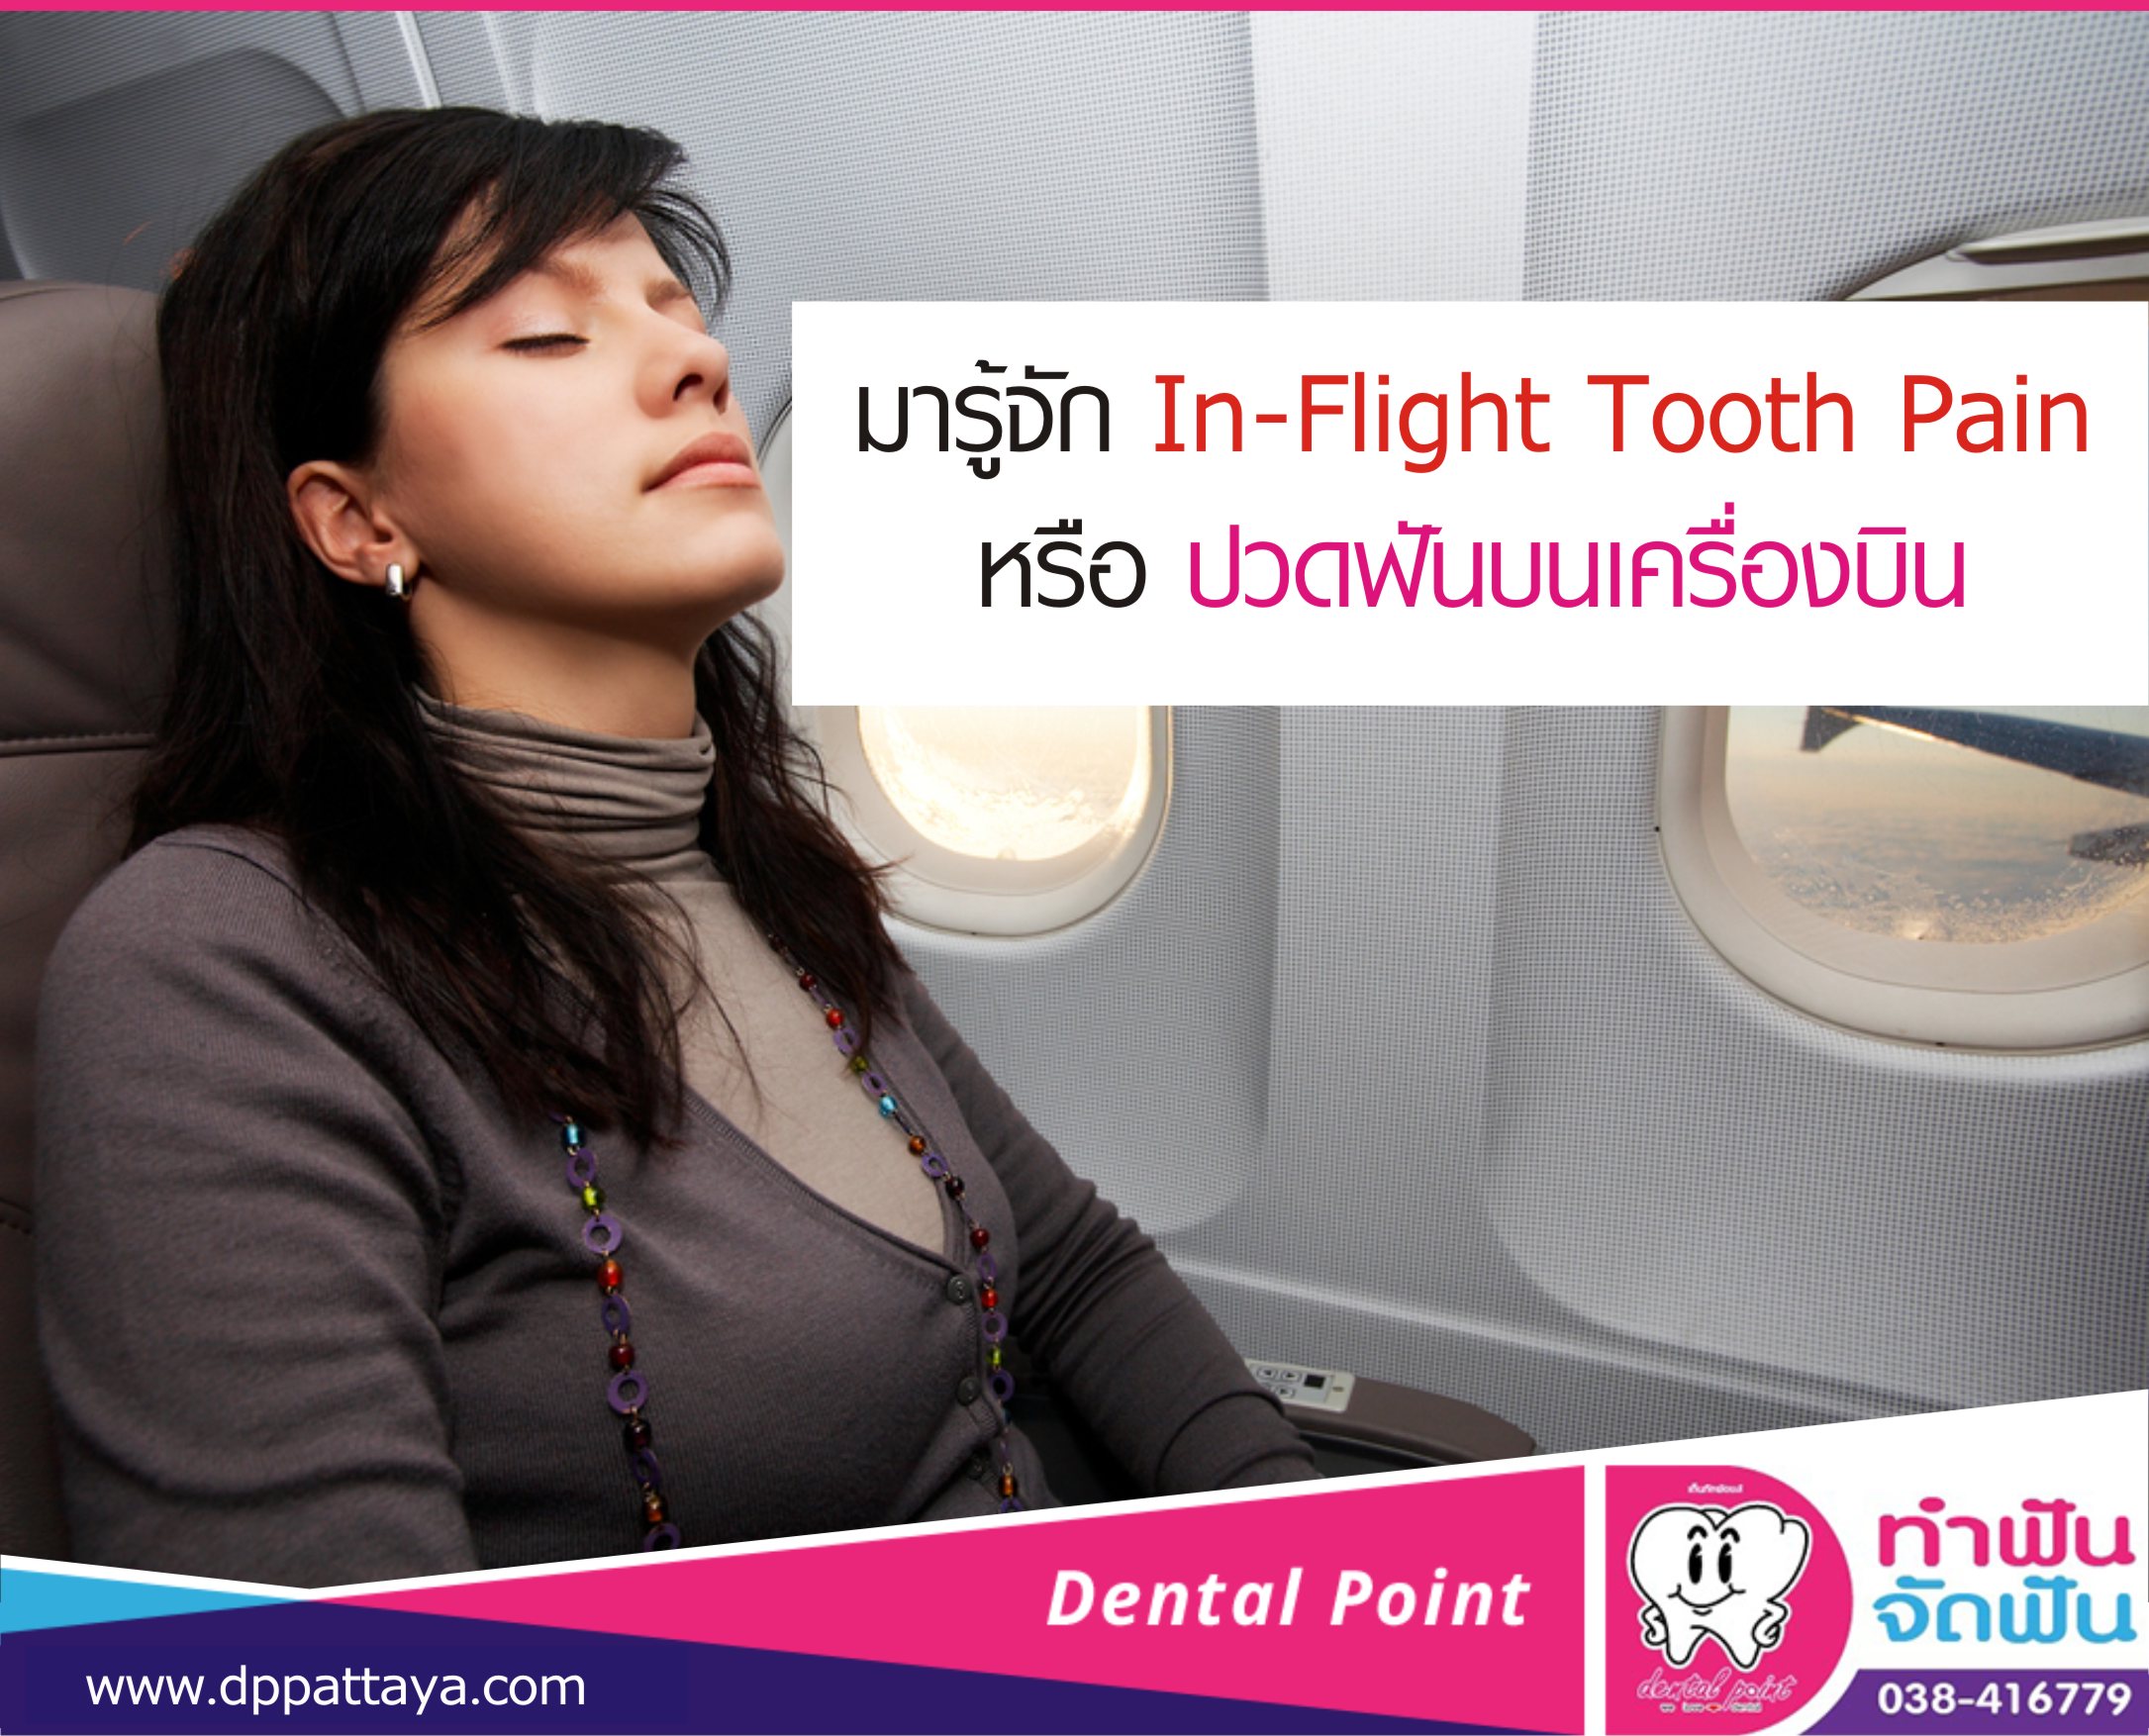 มารู้จัก In-Flight Tooth Pain หรือ ปวดฟันบนเครื่องบิน